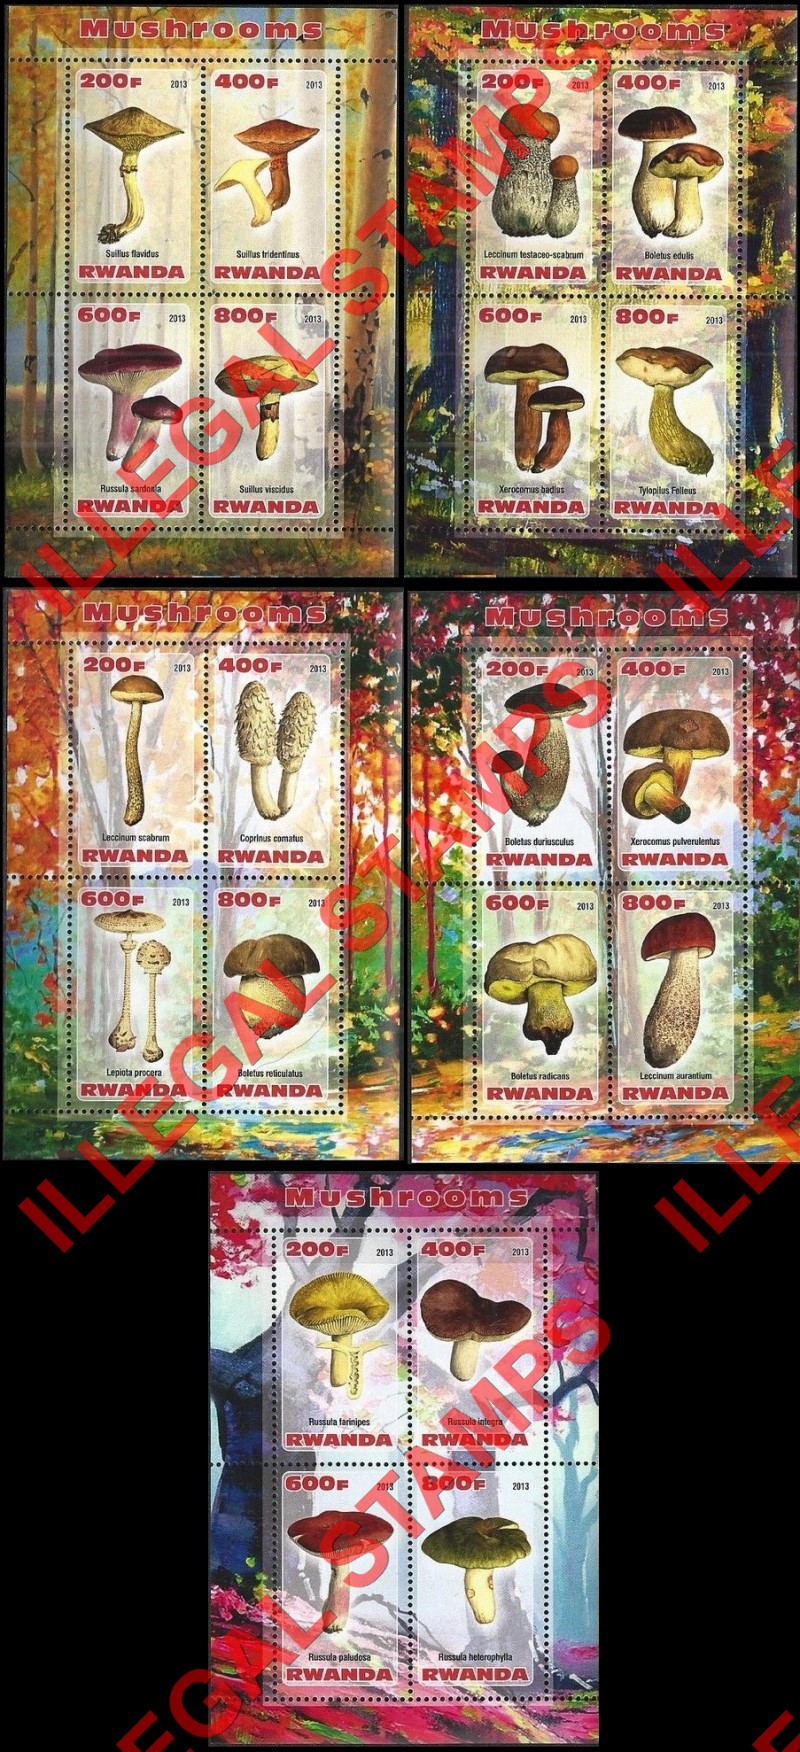 Rwanda 2013 Mushrooms Illegal Stamp Souvenir Sheets of 4